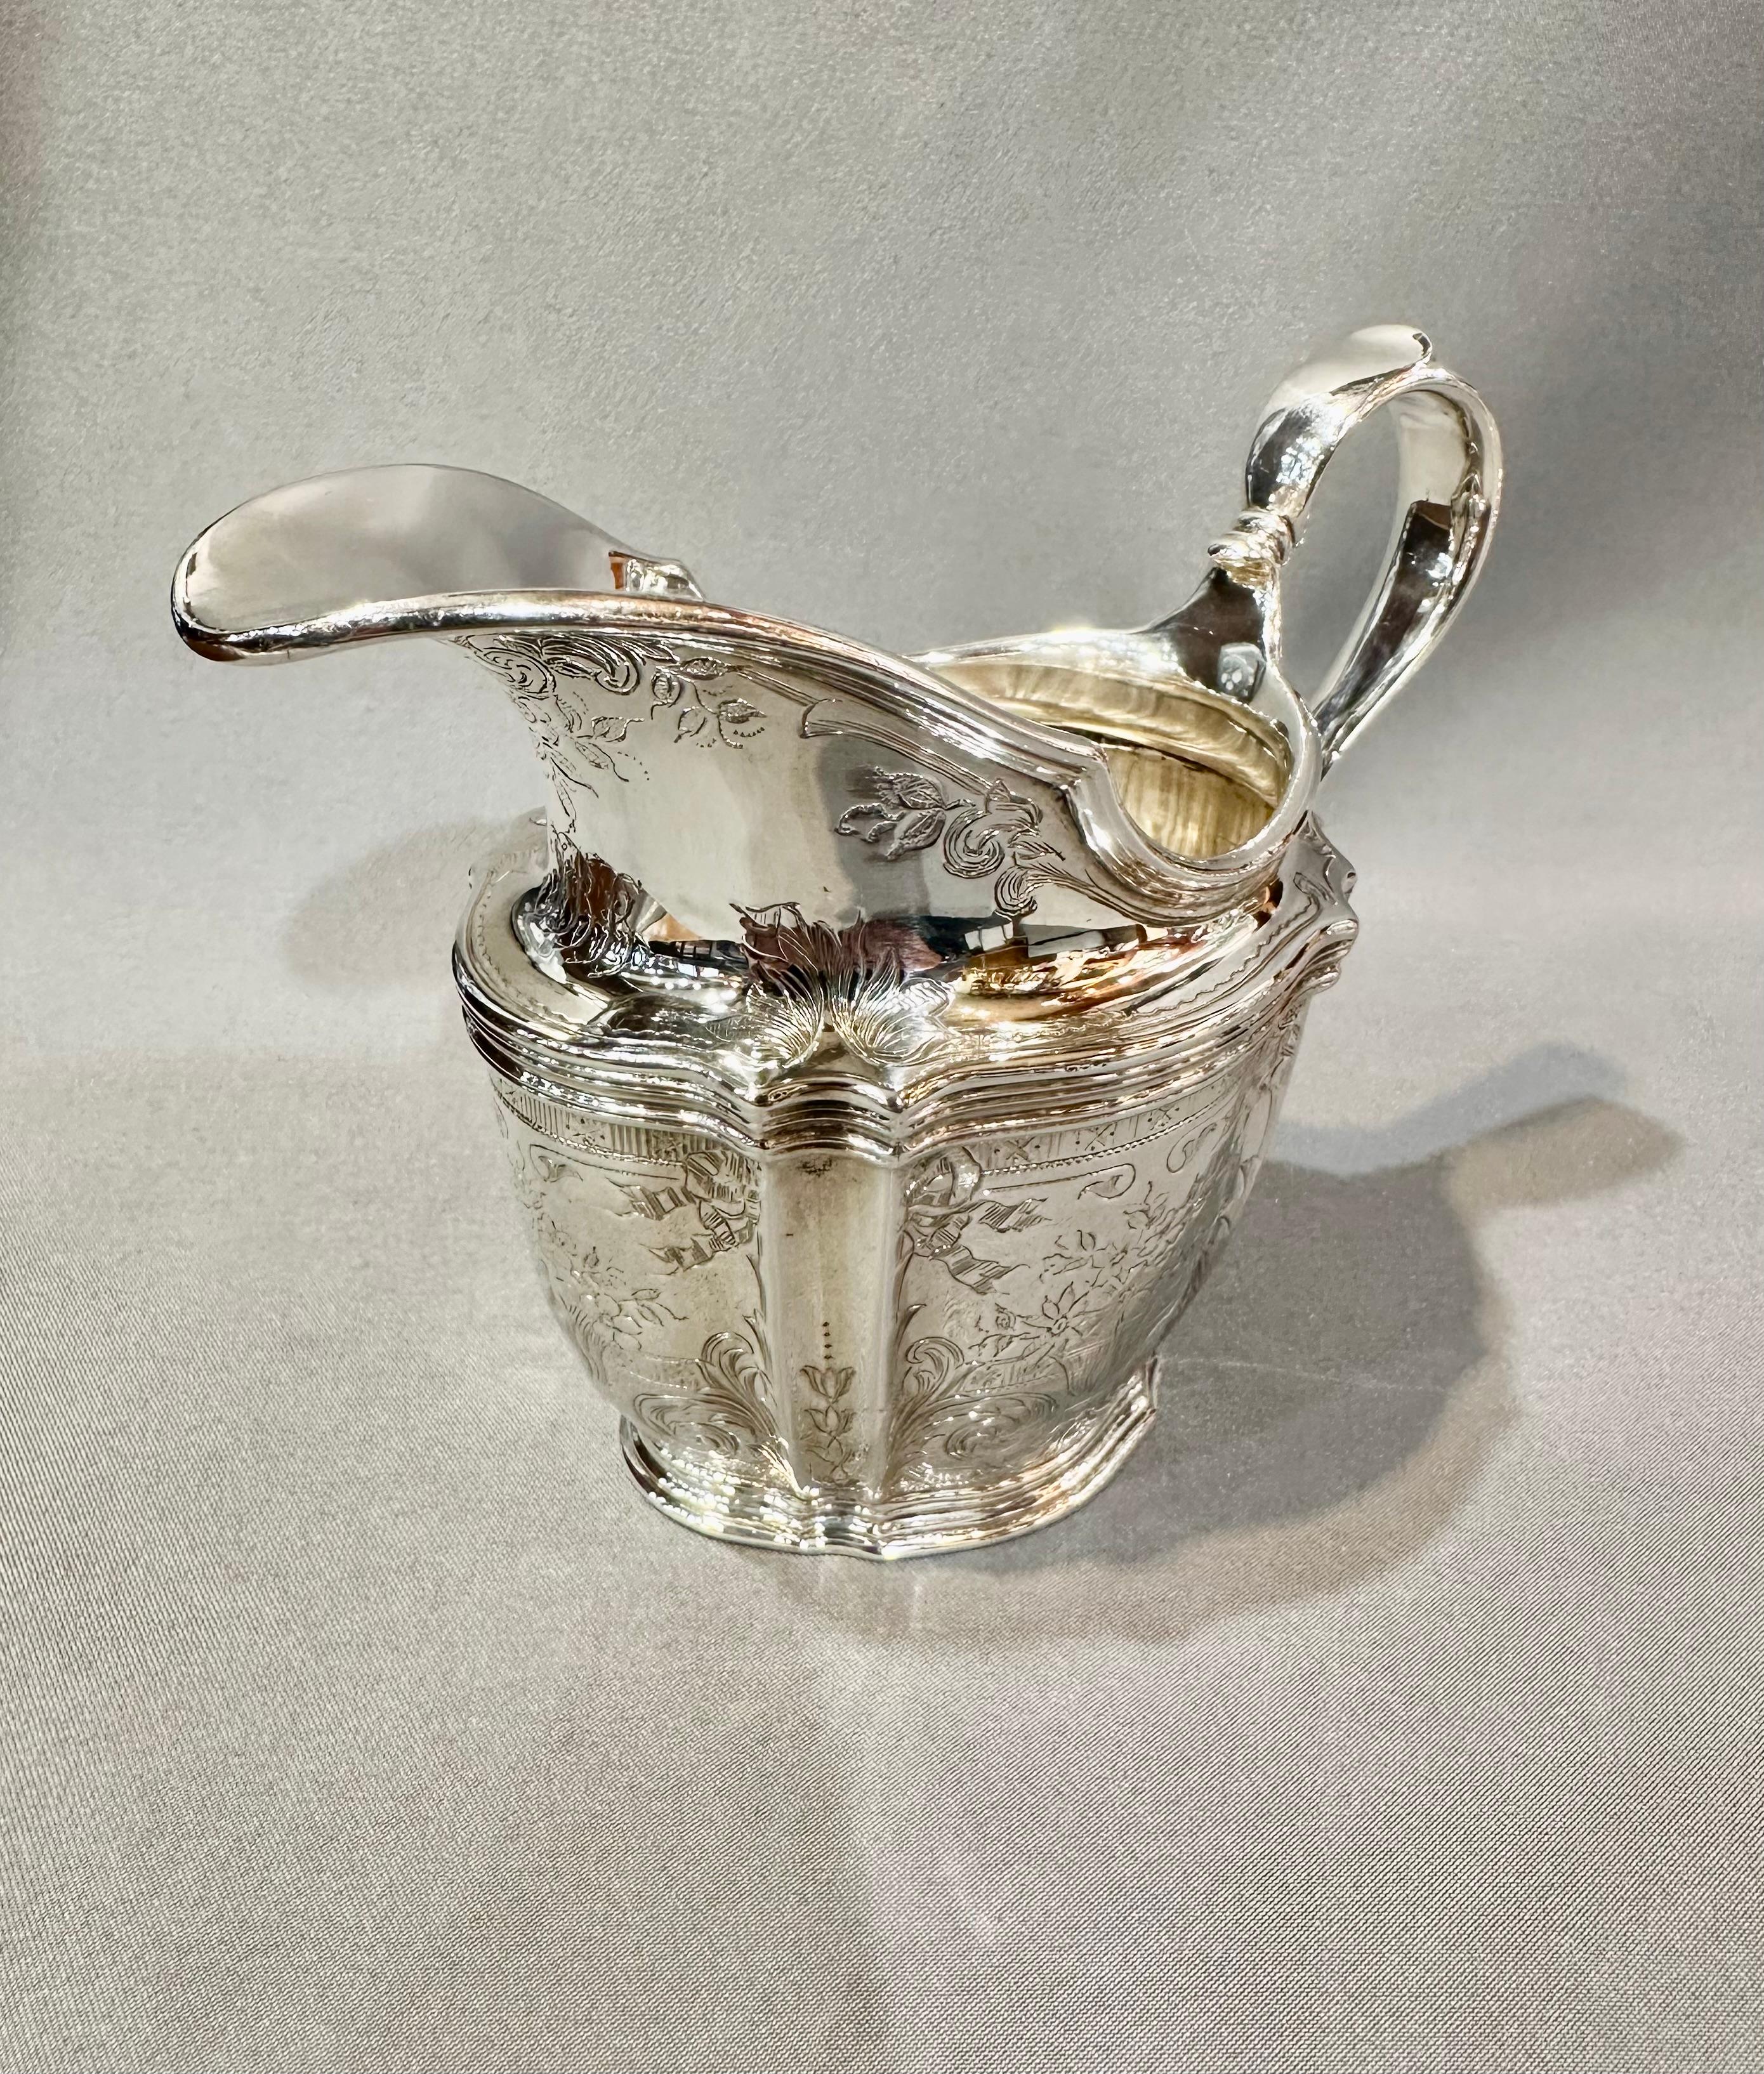 
Fabulous Regency Sterling Silber Kaffee oder Tee-Set. Hergestellt von Tiffany & Co. in New York. Dieses Set besteht aus 3 Teilen: Kaffeekanne/Teekanne, Milchkännchen, Zucker.
In dem berühmten Muster, das ein amerikanischer Klassiker ist, geriffelte